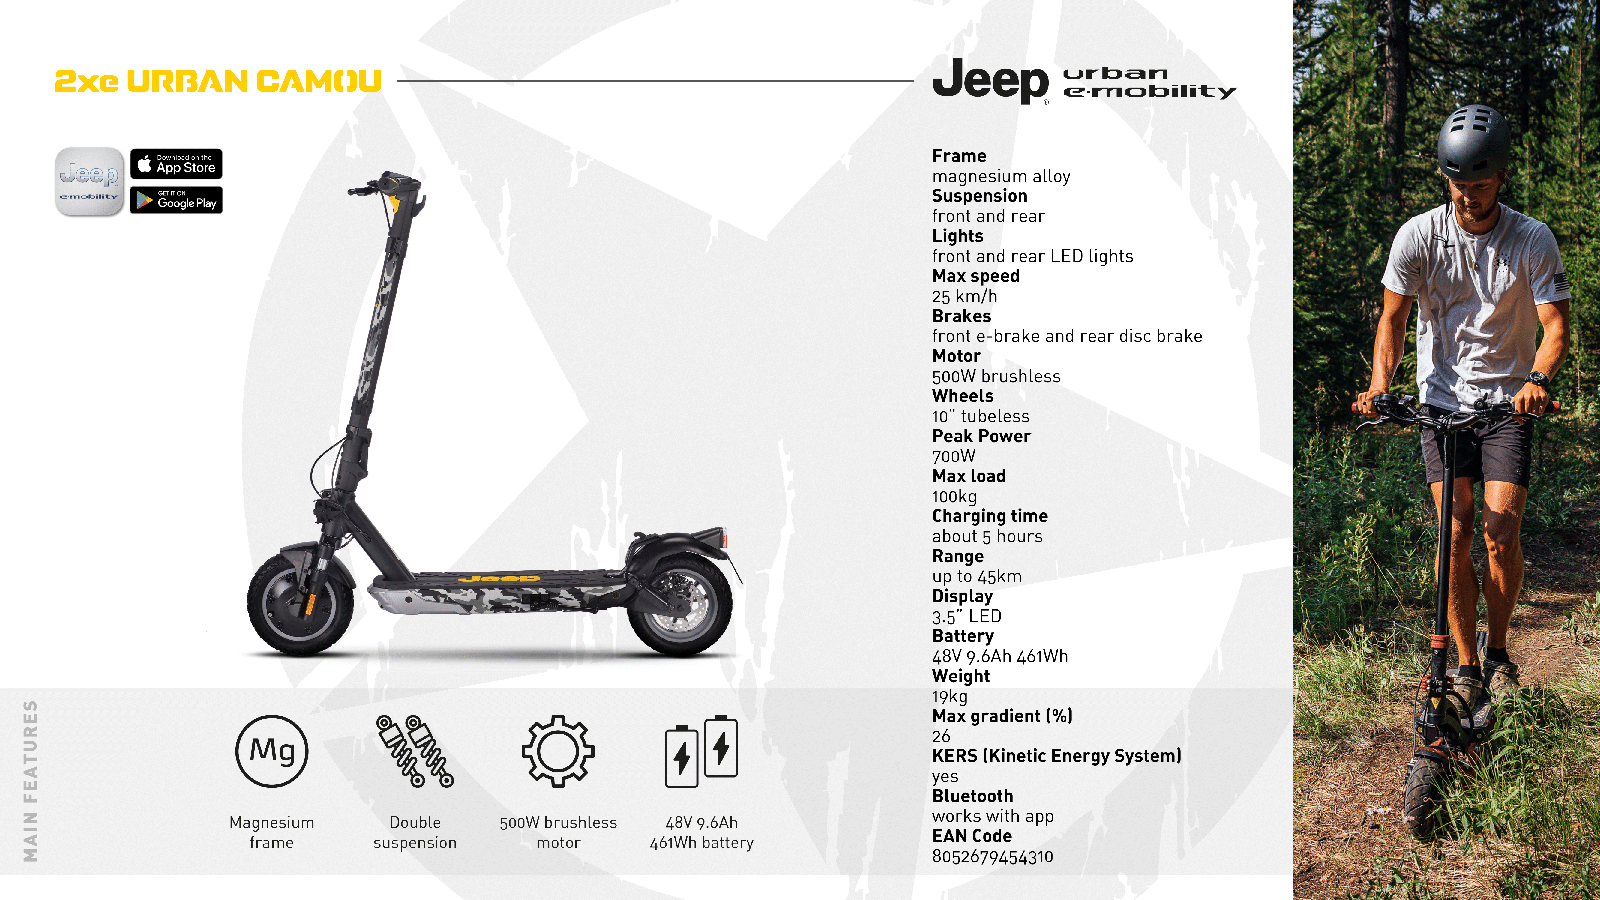 Jeep 2xe Urban Camou - Monopattino Expert - L'unico con centri di assistenza in tutta Italia